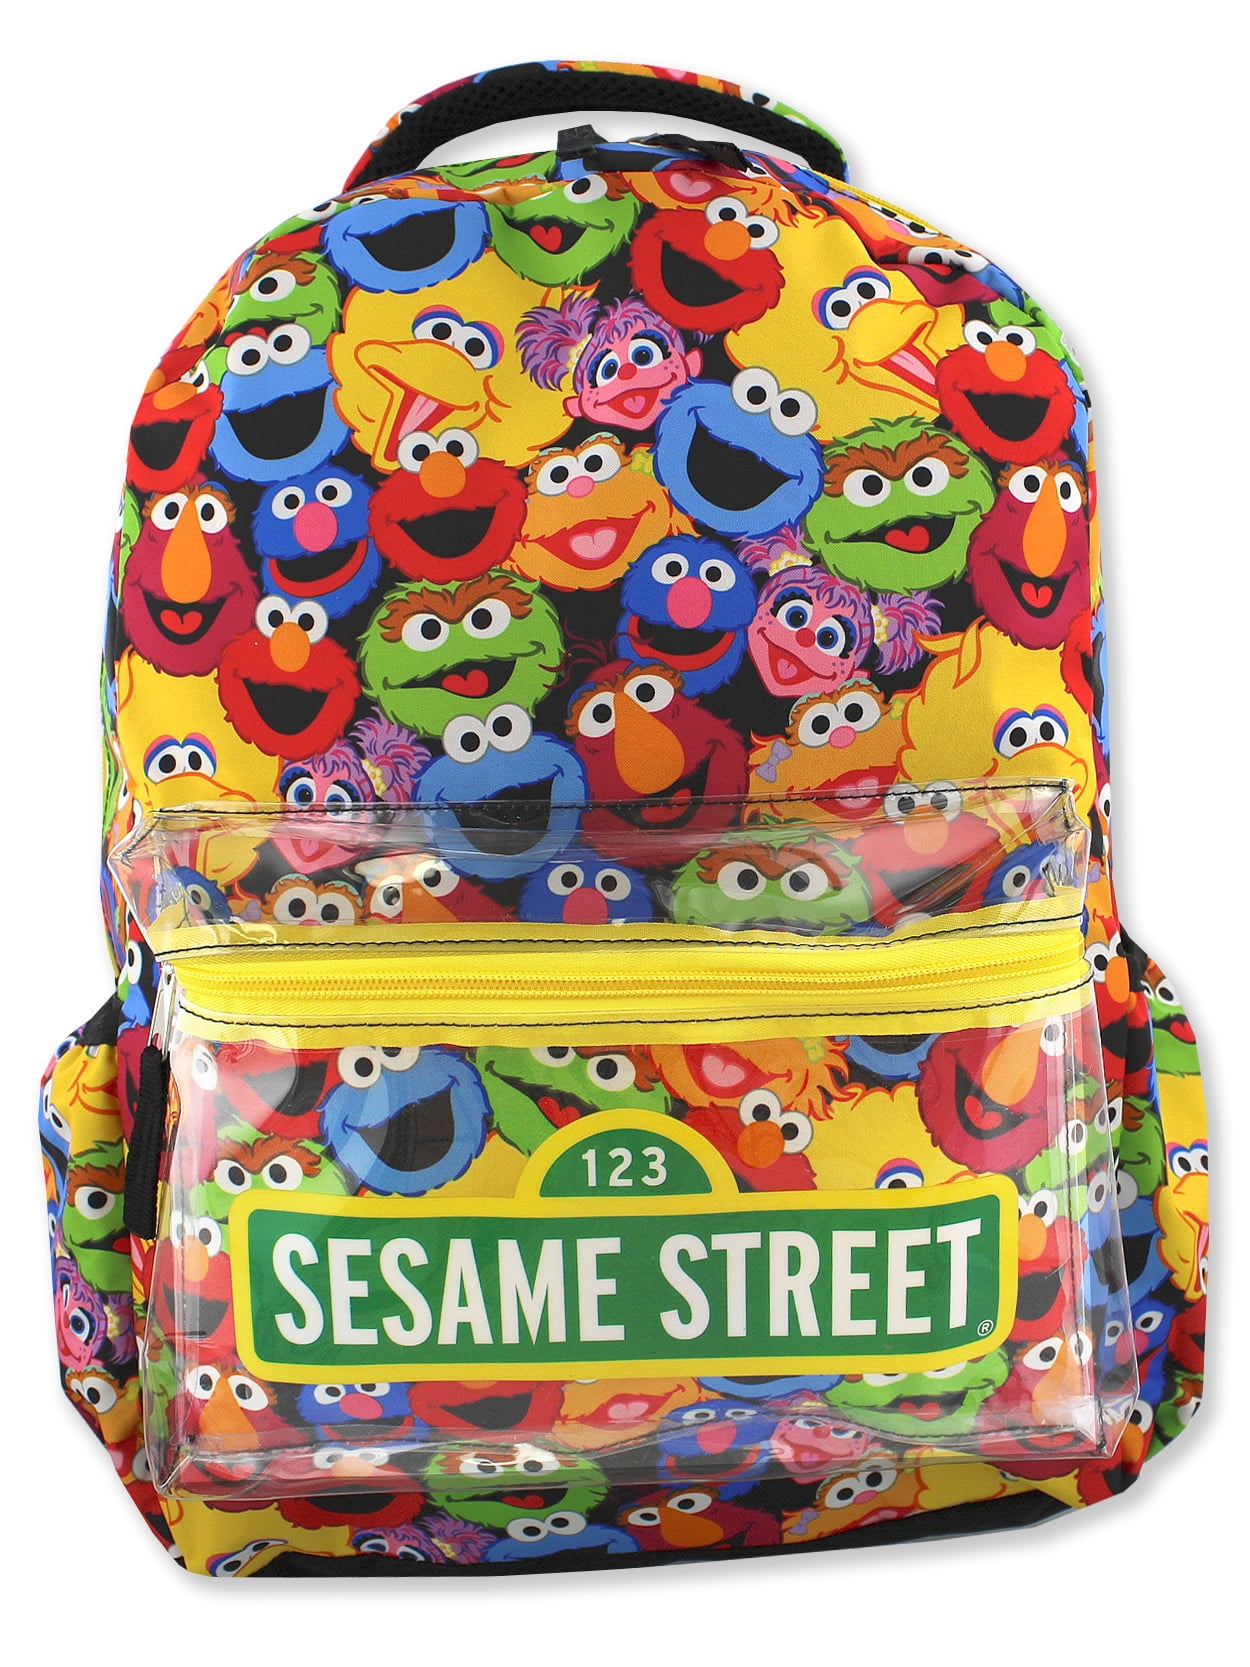 Sesame Street 12" Elmo Kids' Backpack  ABC's NEW 